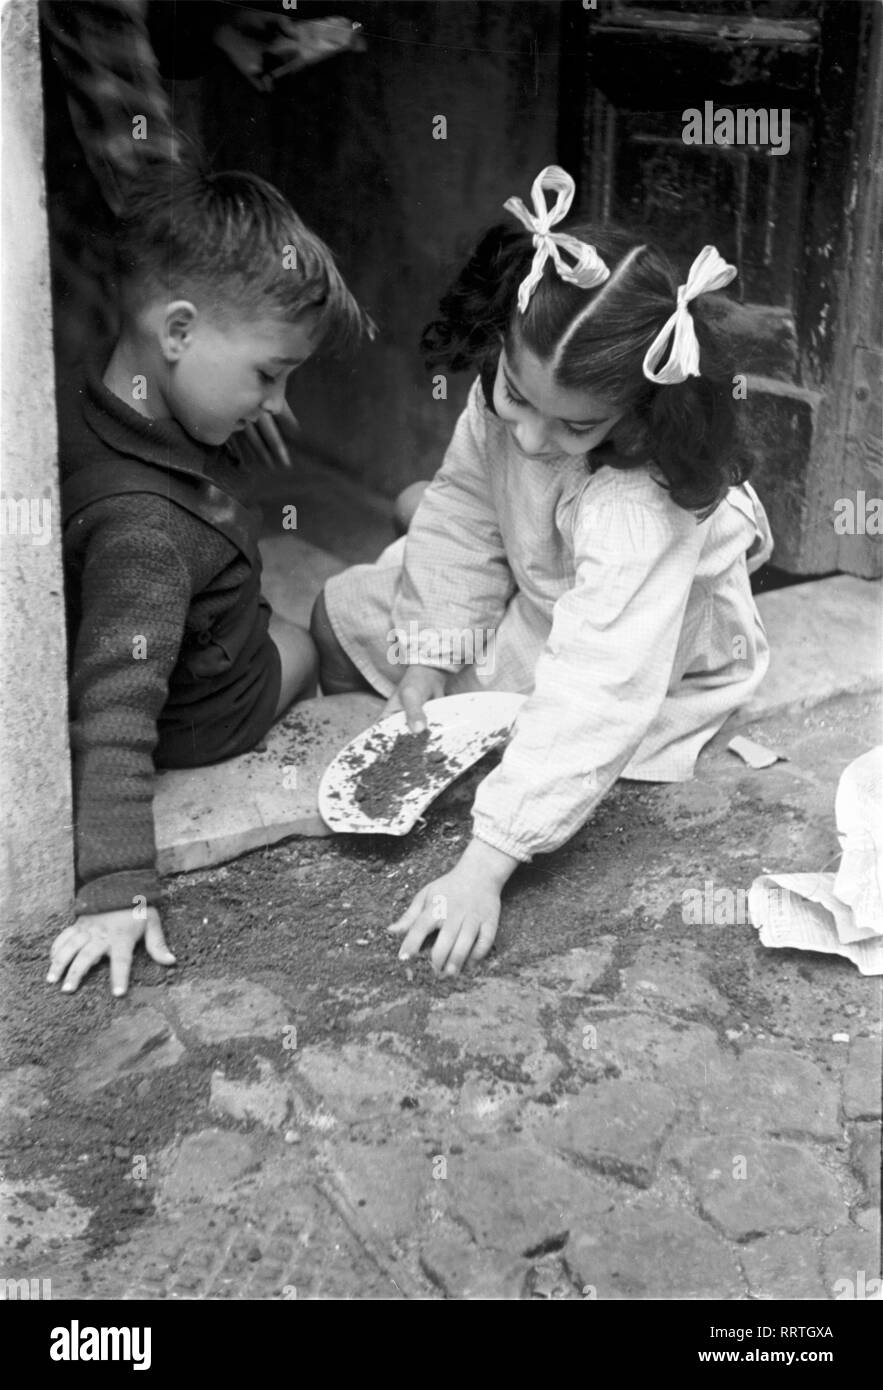 Reisen nach Italien - Italien 1950 - spielende Kinder in Rom, Trastevere Viertel. Spielende Kinder im Viertel Trastevere in Rom, Italien. Foto Erich Andres Stockfoto